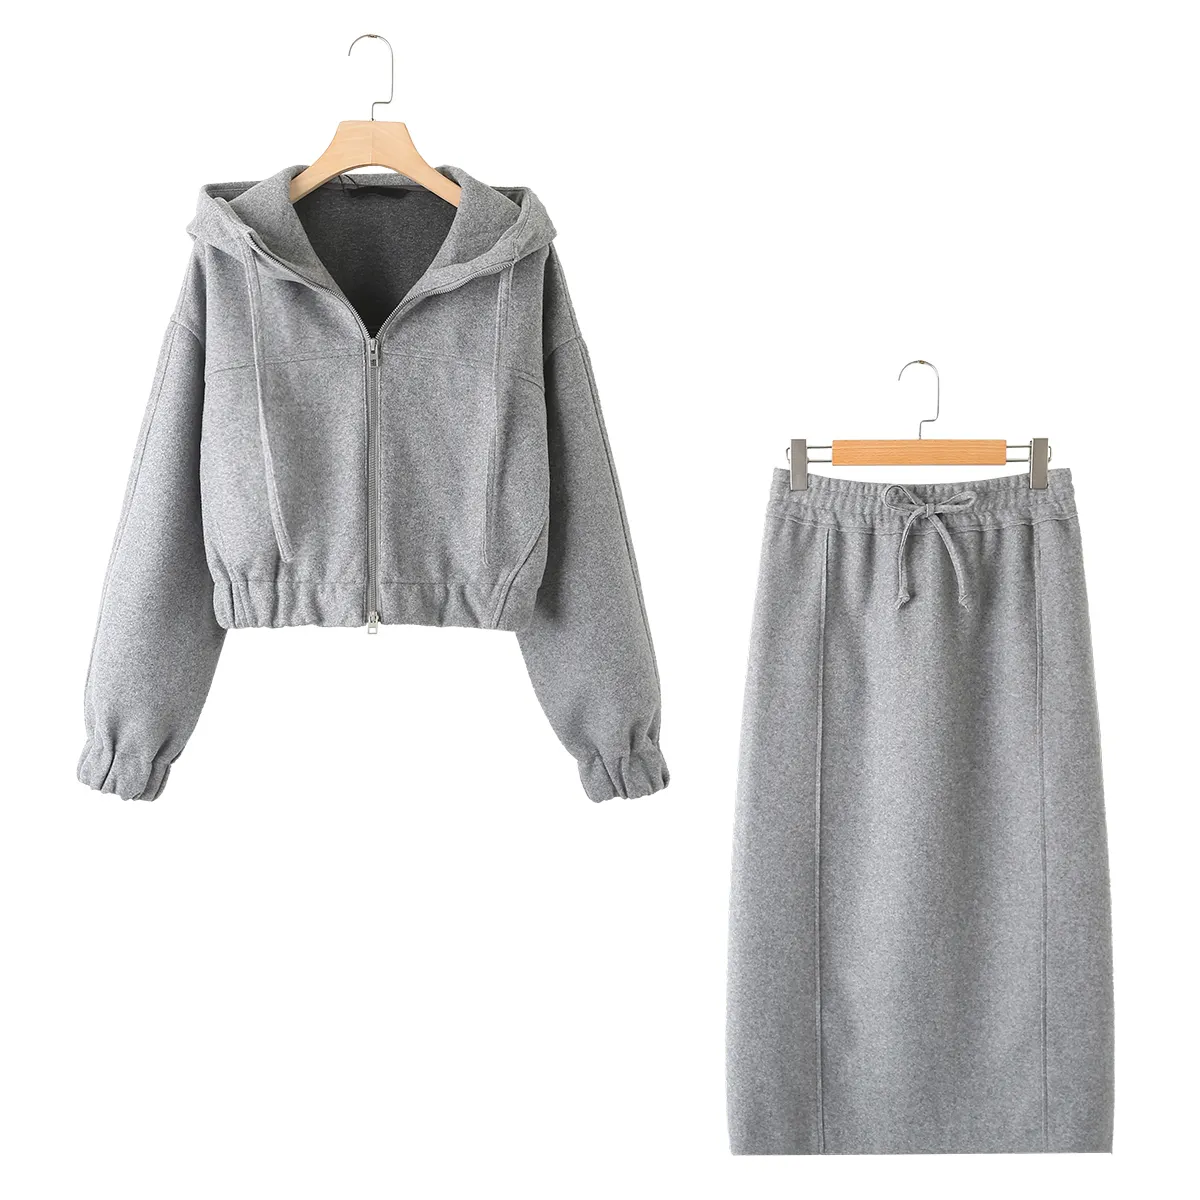 KAOPU ZA set sweter dua potong untuk wanita, kaos serut motif tekstur bulu Kempa dan rok midi pinggang tinggi